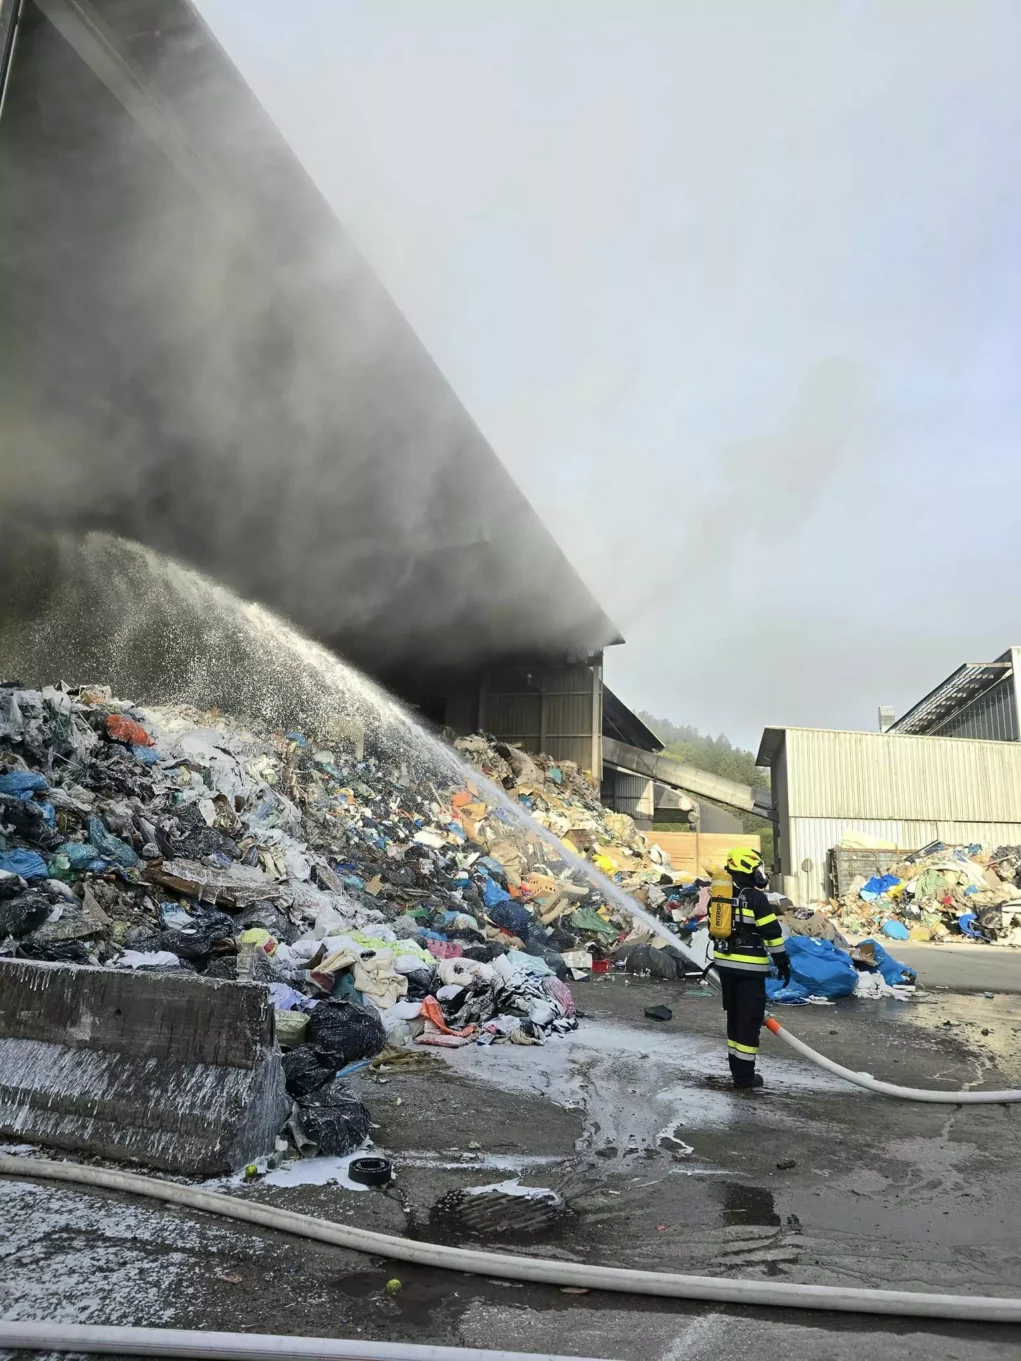 Lagerhalle bei Mülldeponie brannte: 30 Florianis im Einsatz